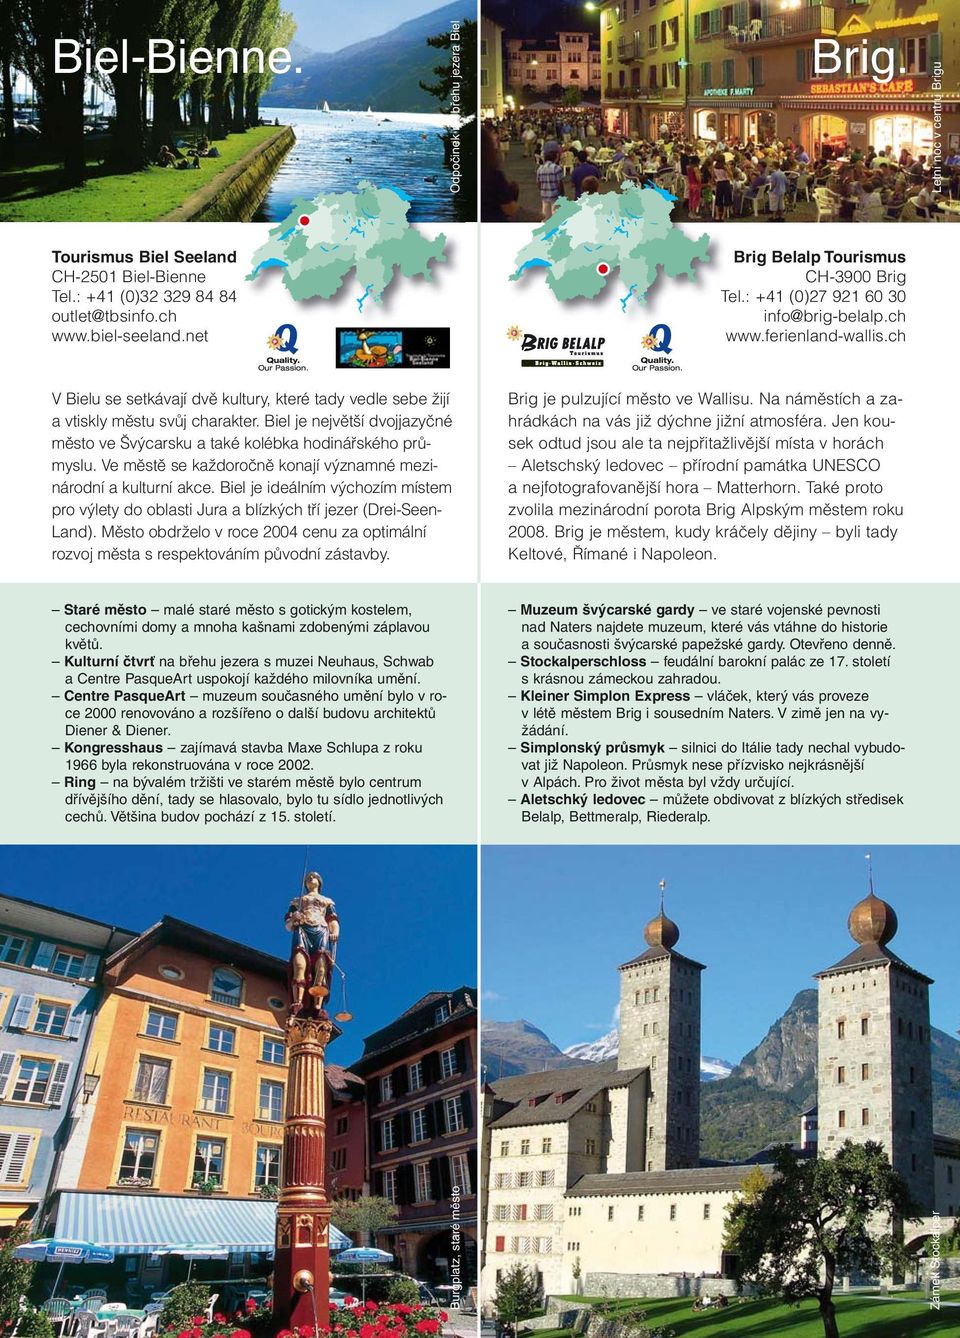 Biel je největší dvojjazyčné město ve Švýcarsku a také kolébka hodinářského průmyslu. Ve městě se každoročně konají významné mezinárodní a kulturní akce.